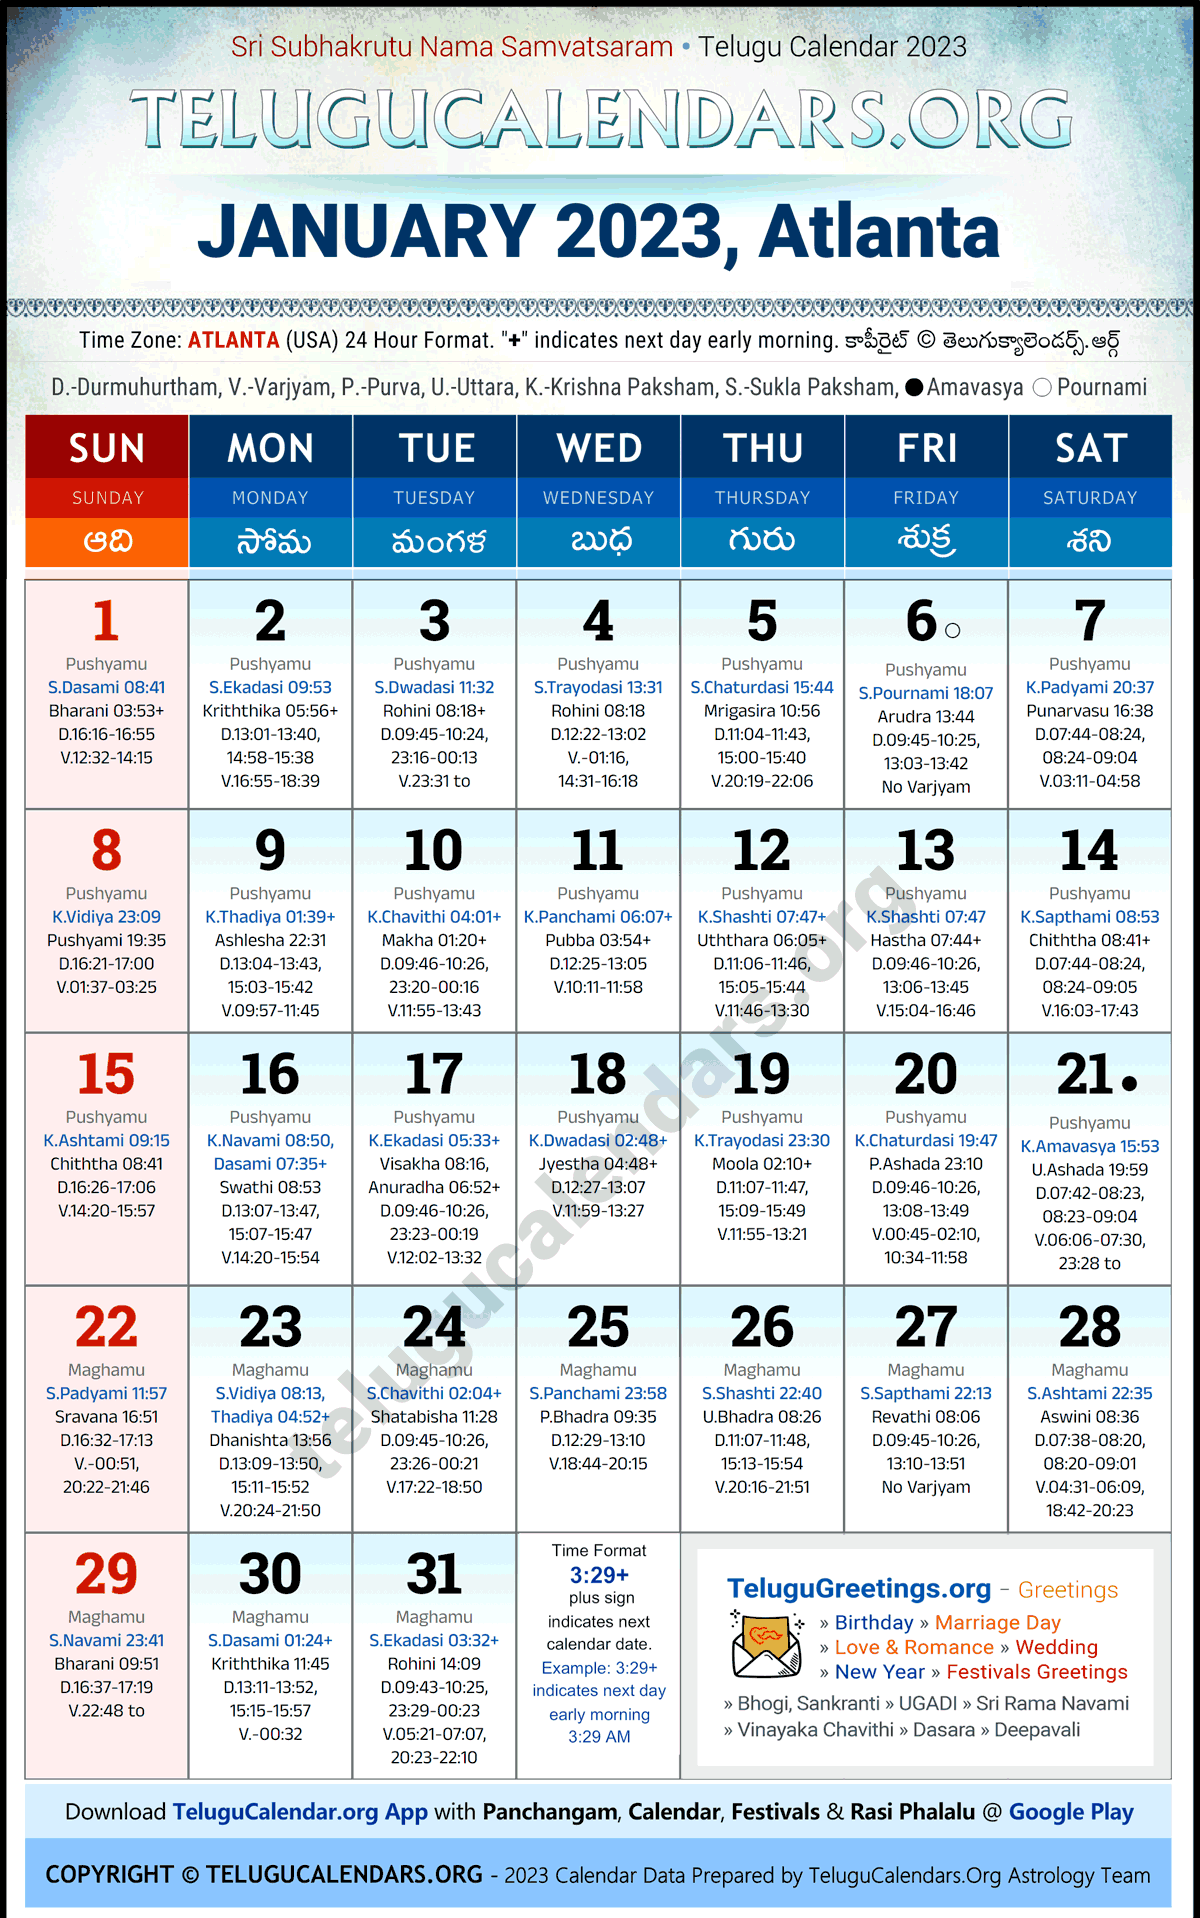 Telugu Calendar 2023 January Festivals for Atlanta